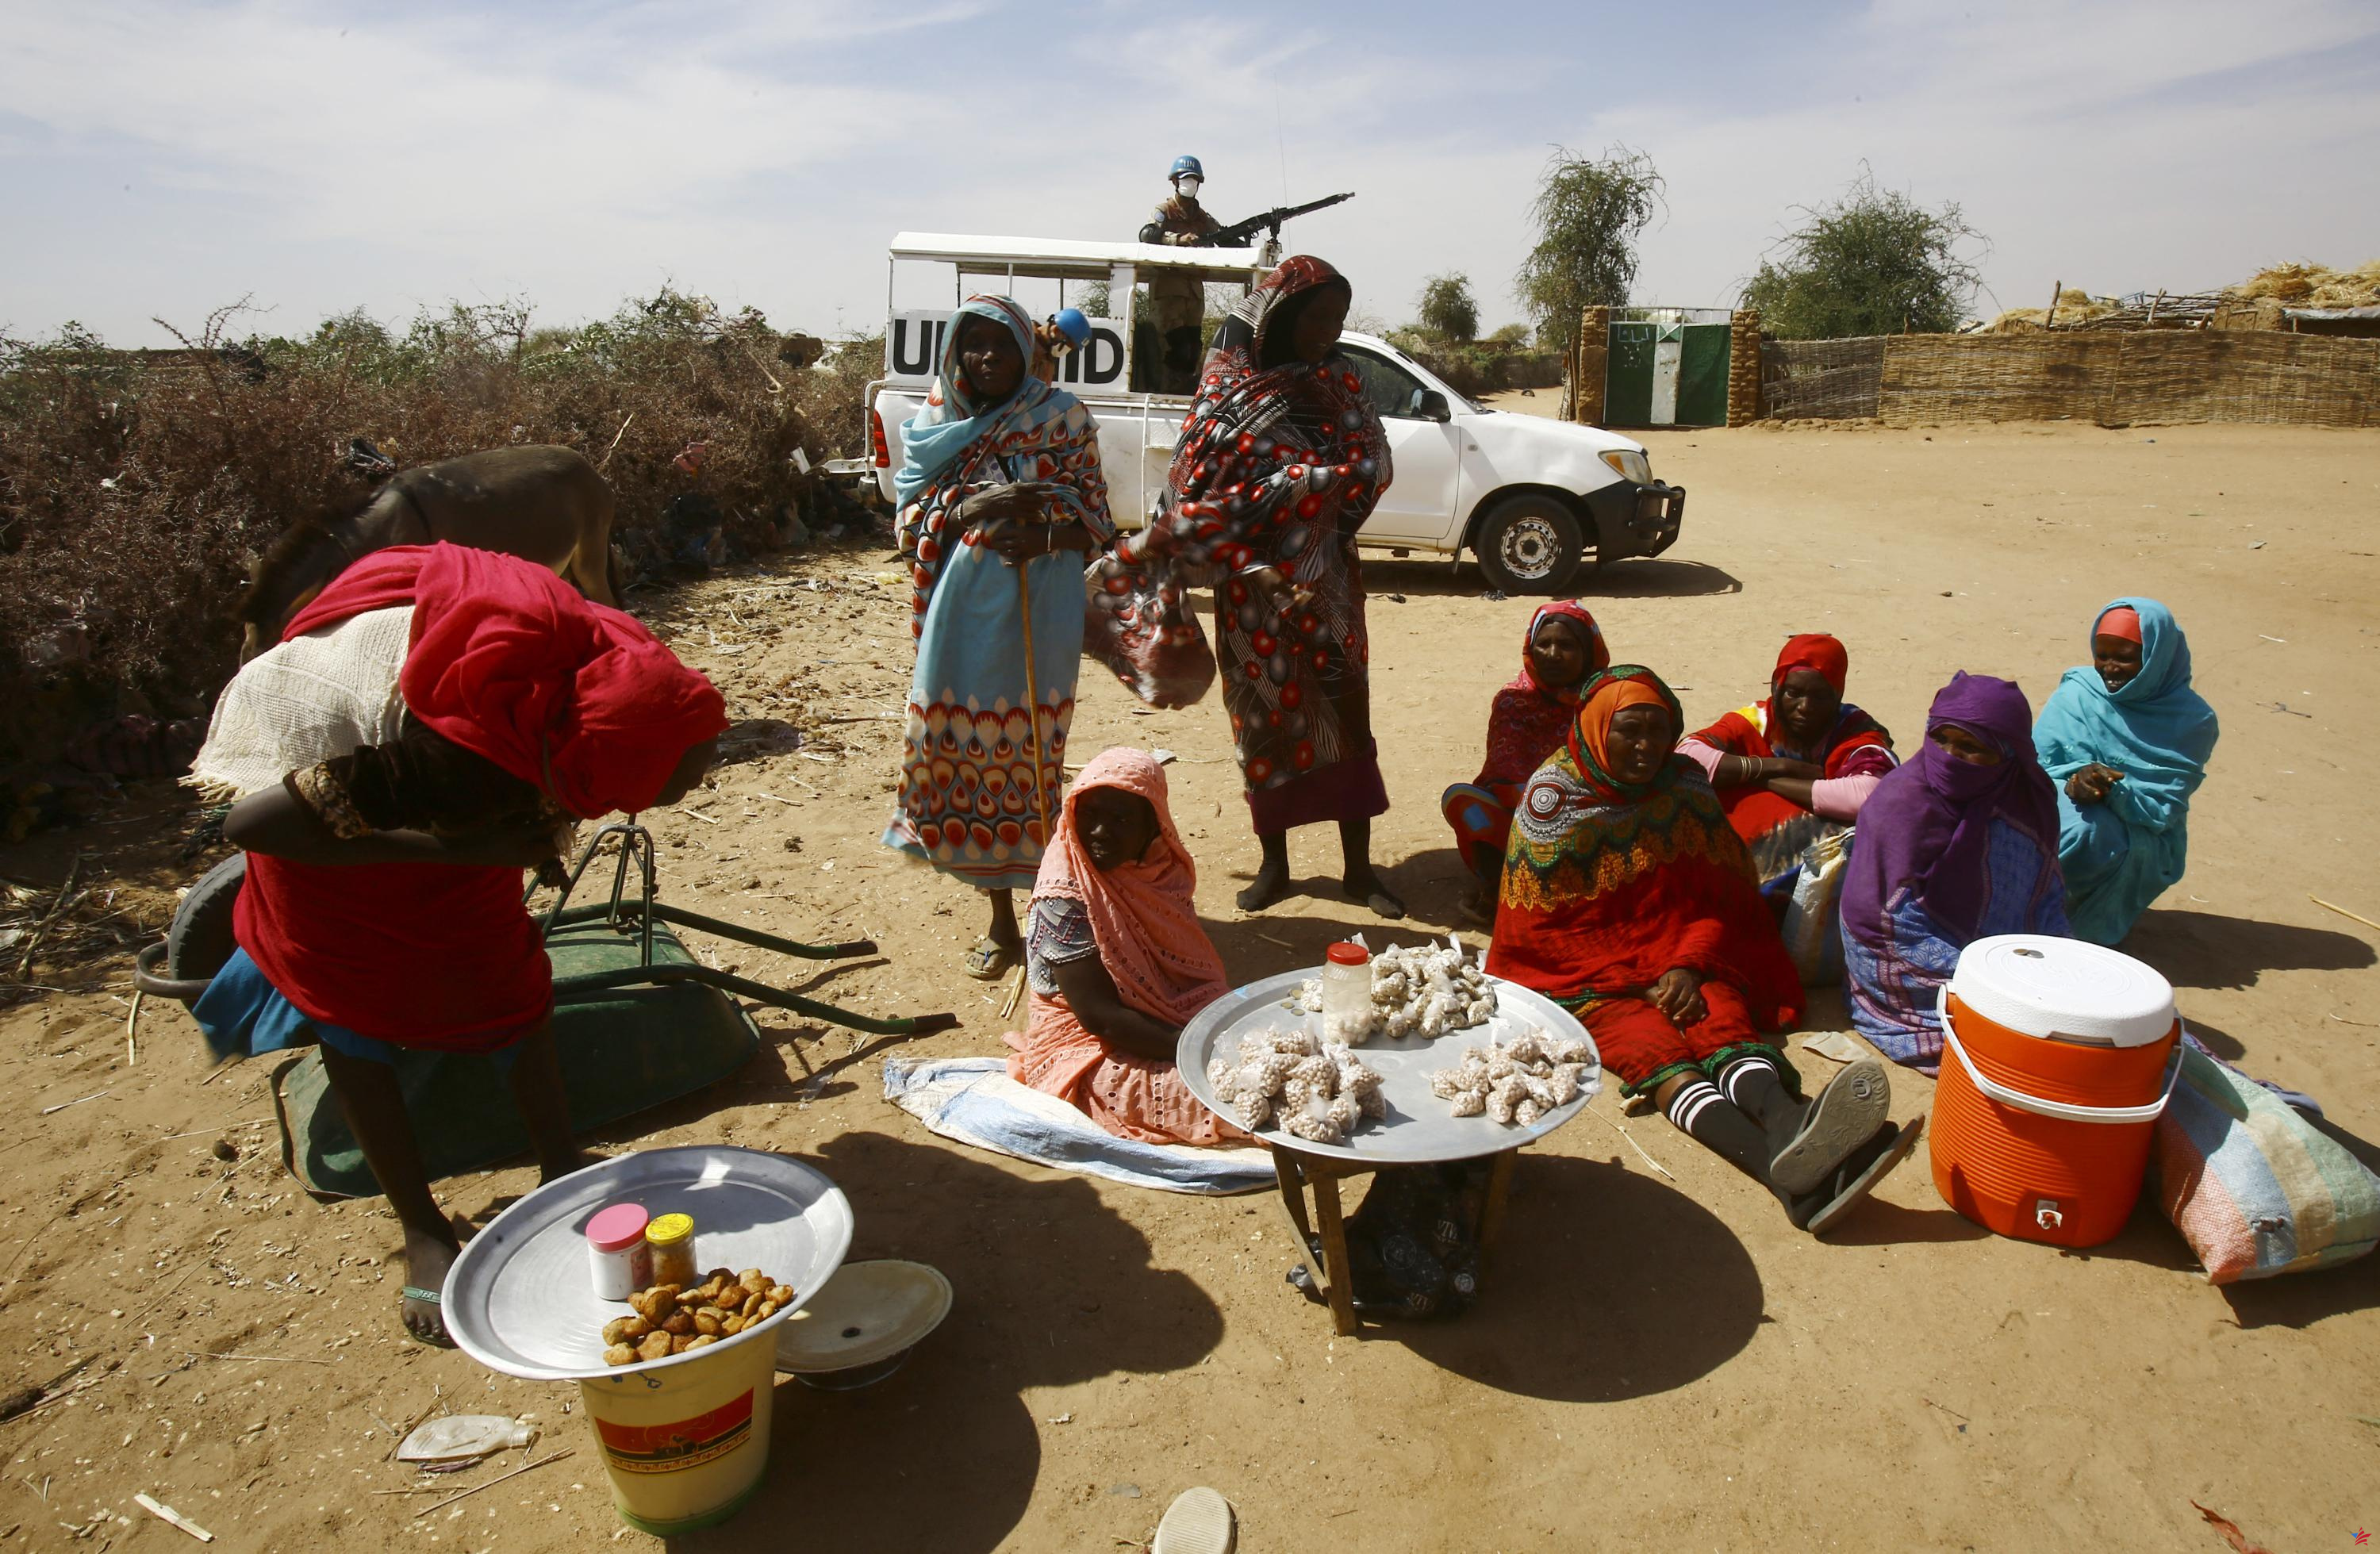 Sudán: autoridades acusadas de bloquear la ayuda humanitaria, vital para Darfur